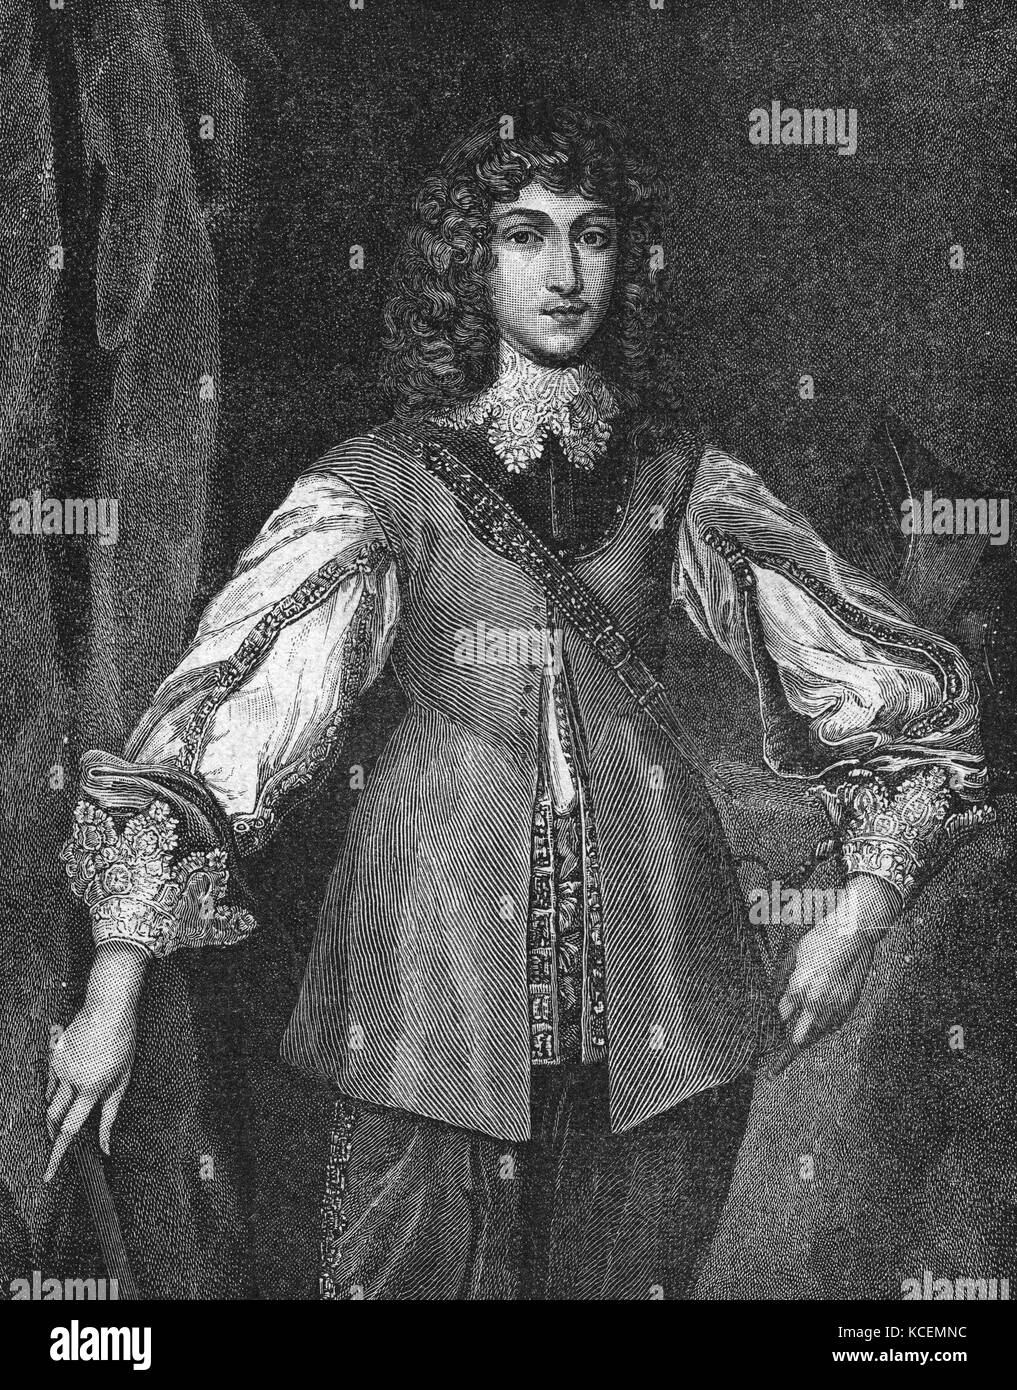 Rupert, il conte palatino del Reno, duca di Baviera, il duca di Cumberland, Conte di Holderness (1619 - 1682), è stato notato un soldato tedesco, Admiral, scienziato, sportivo, governatore coloniale e disegnatore dilettante durante il XVII secolo. Foto Stock